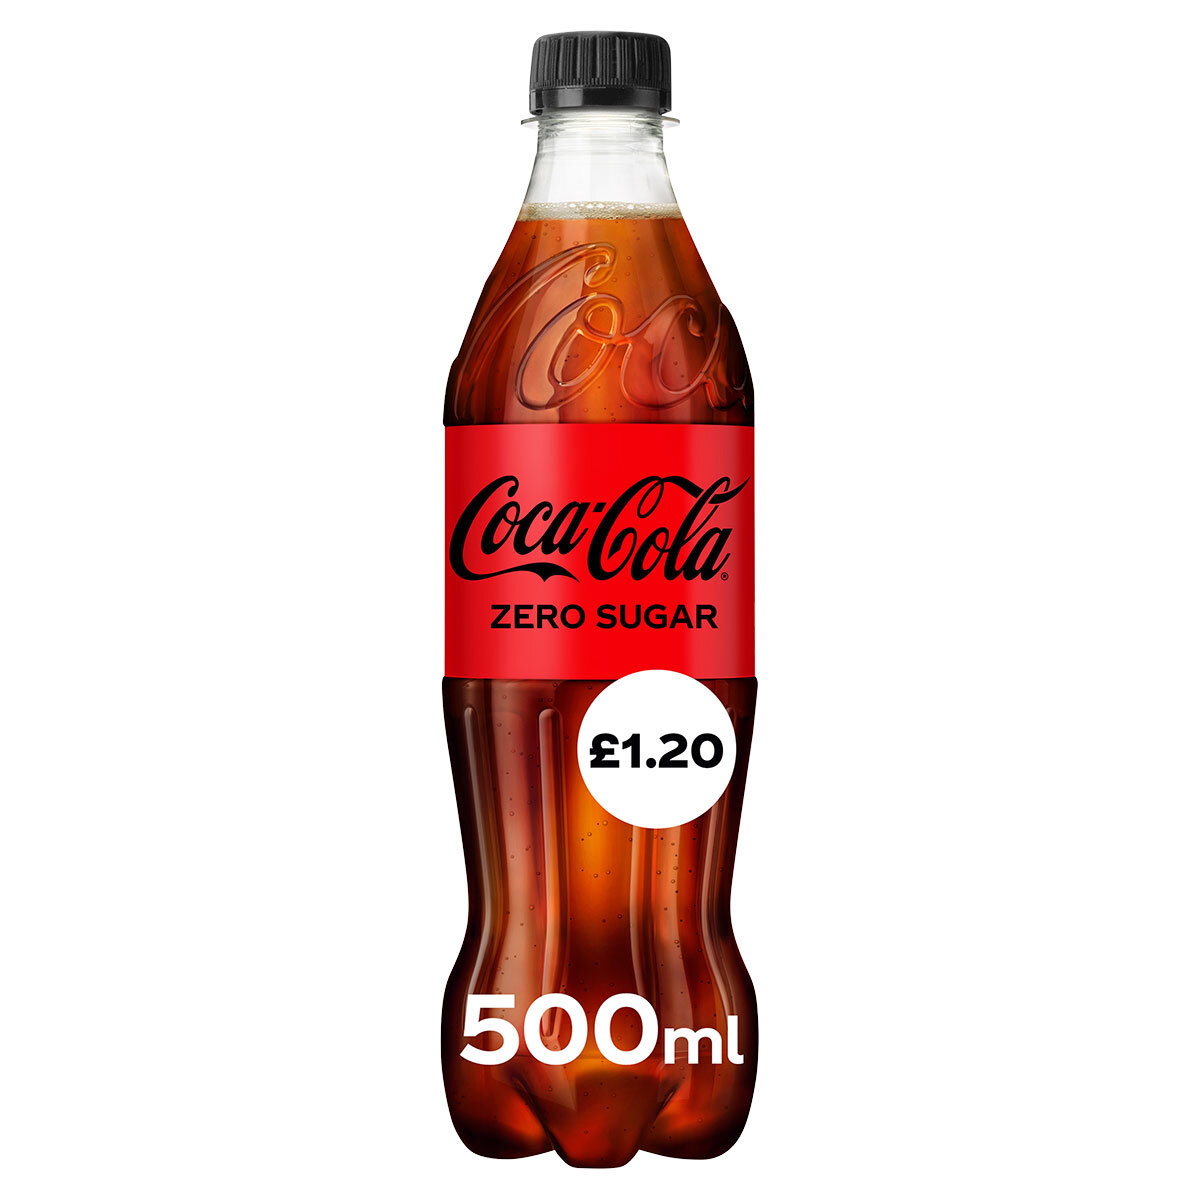 Coca Cola Zero Sugar PMP £1.20, 500ml